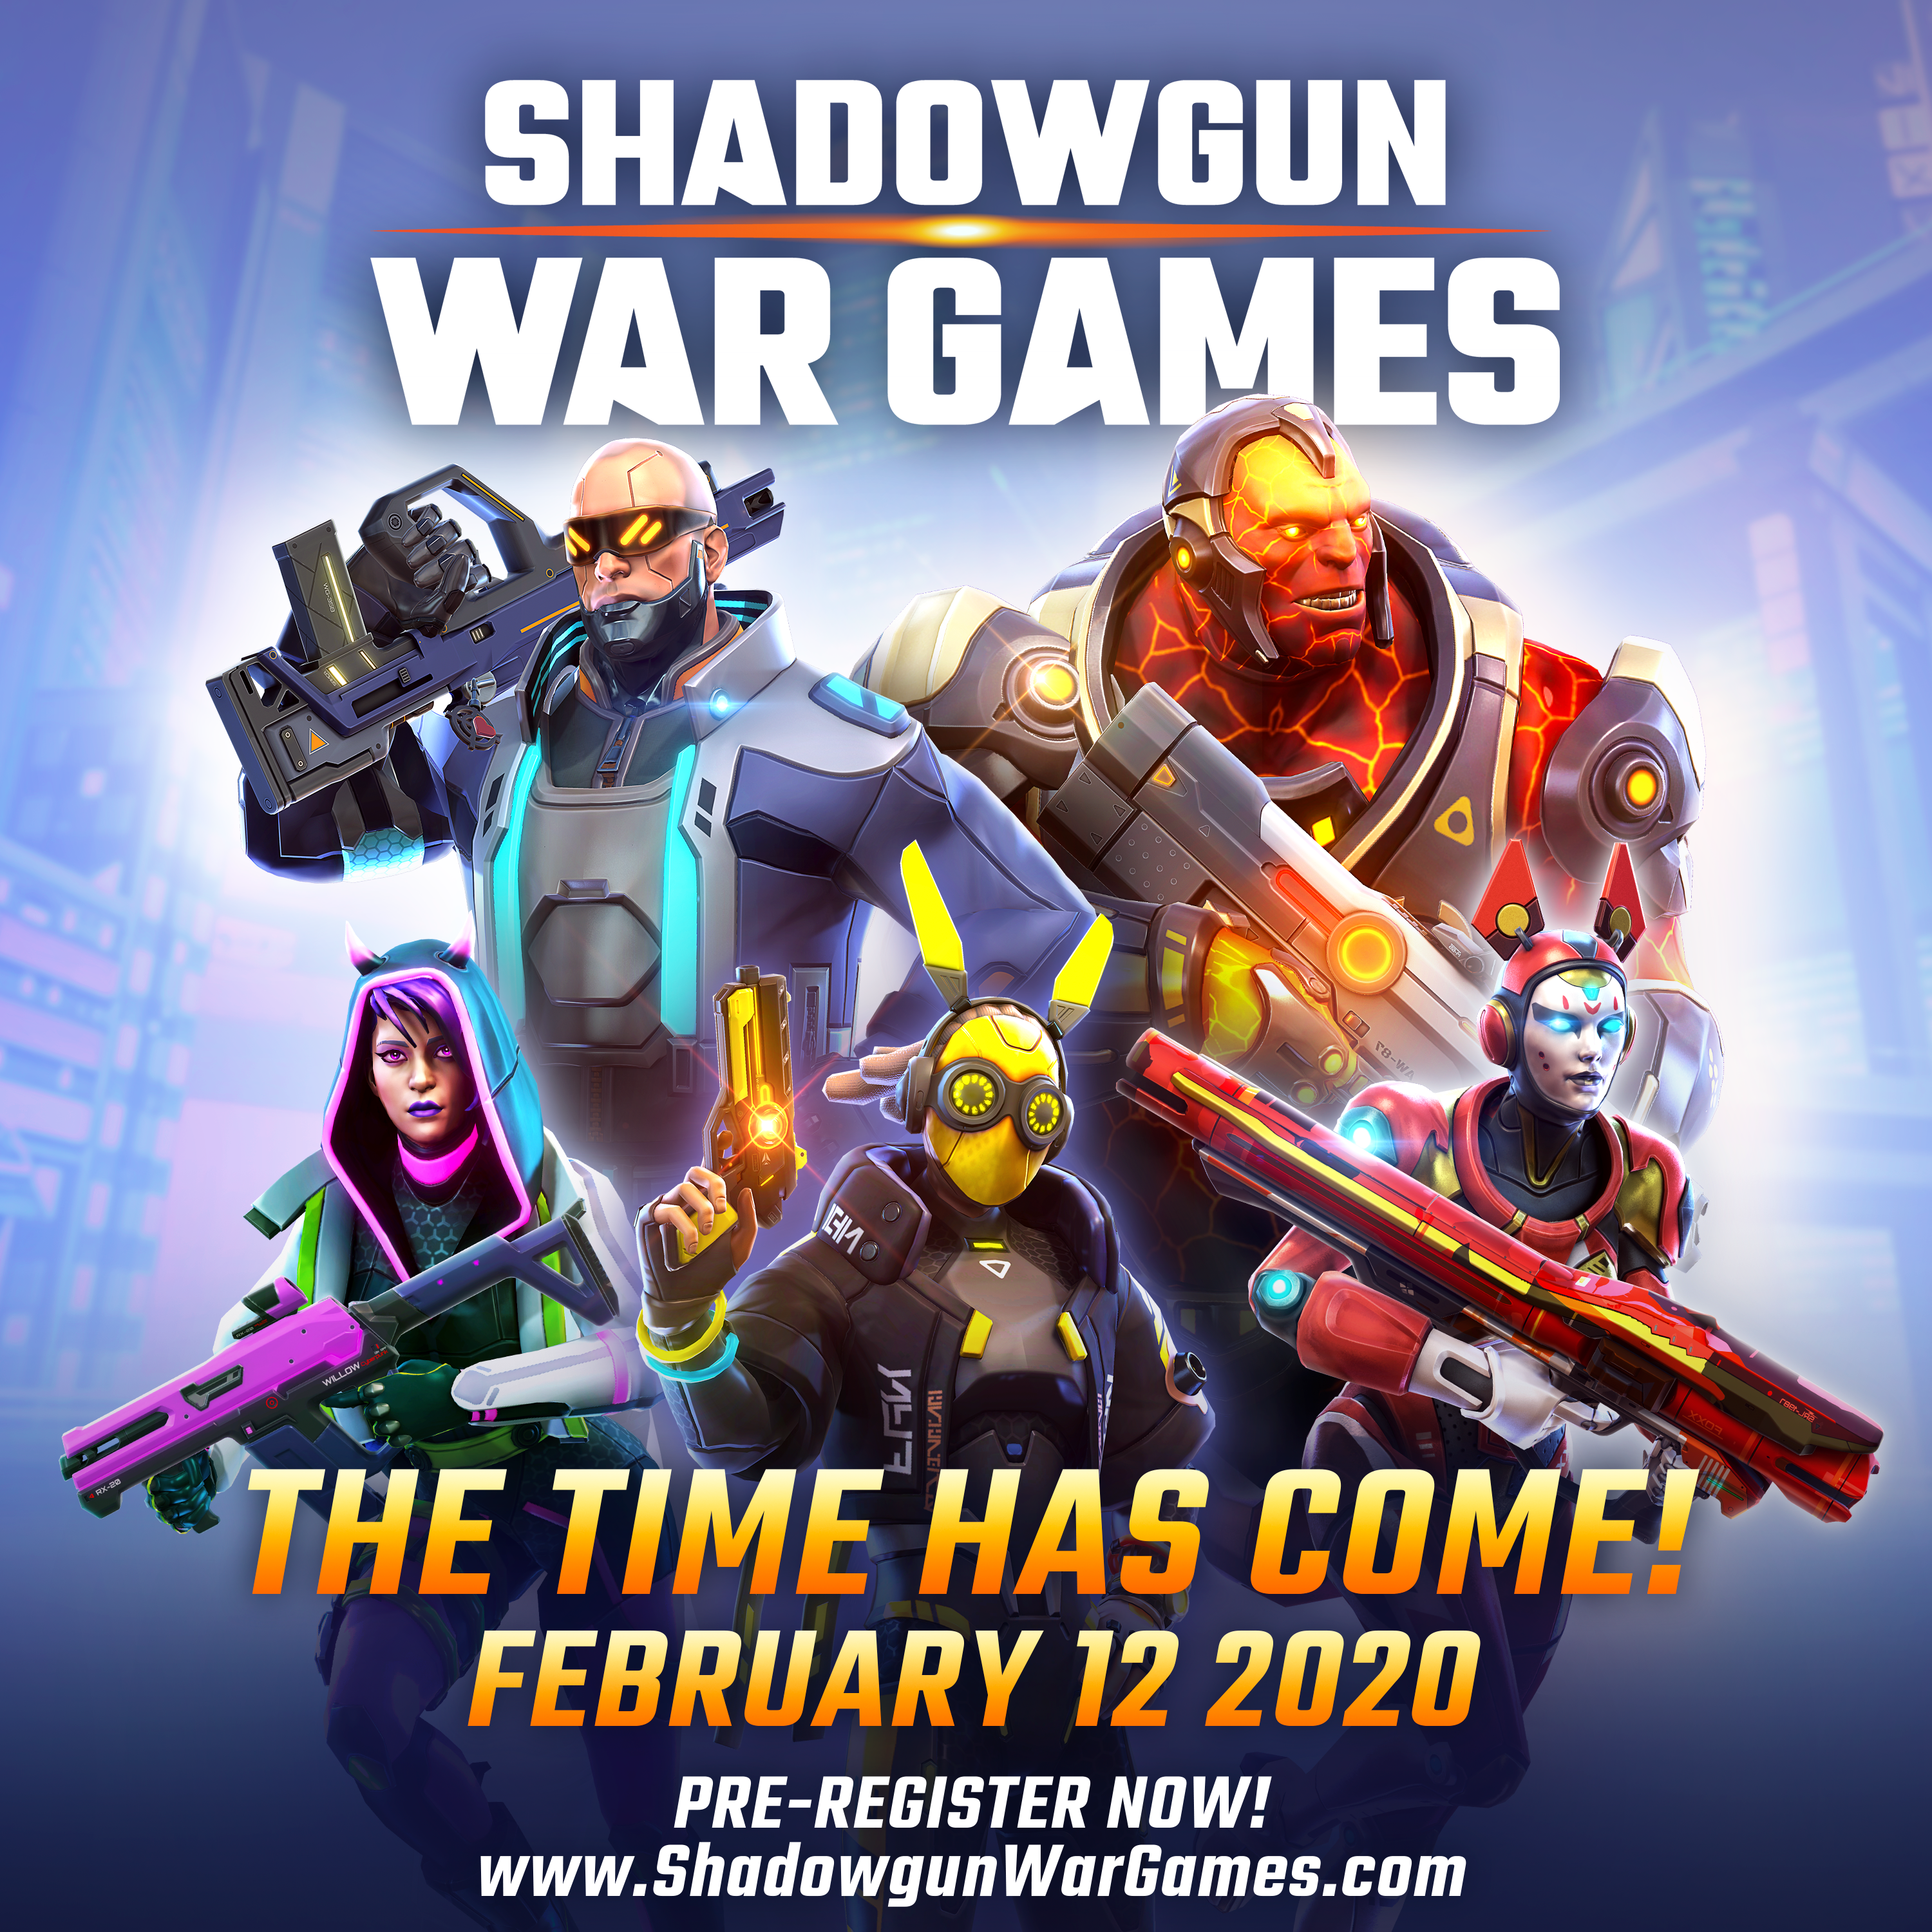 رسميًا لعبة Shadowgun War Games ستكون متاحة يوم 12 فبراير القادم